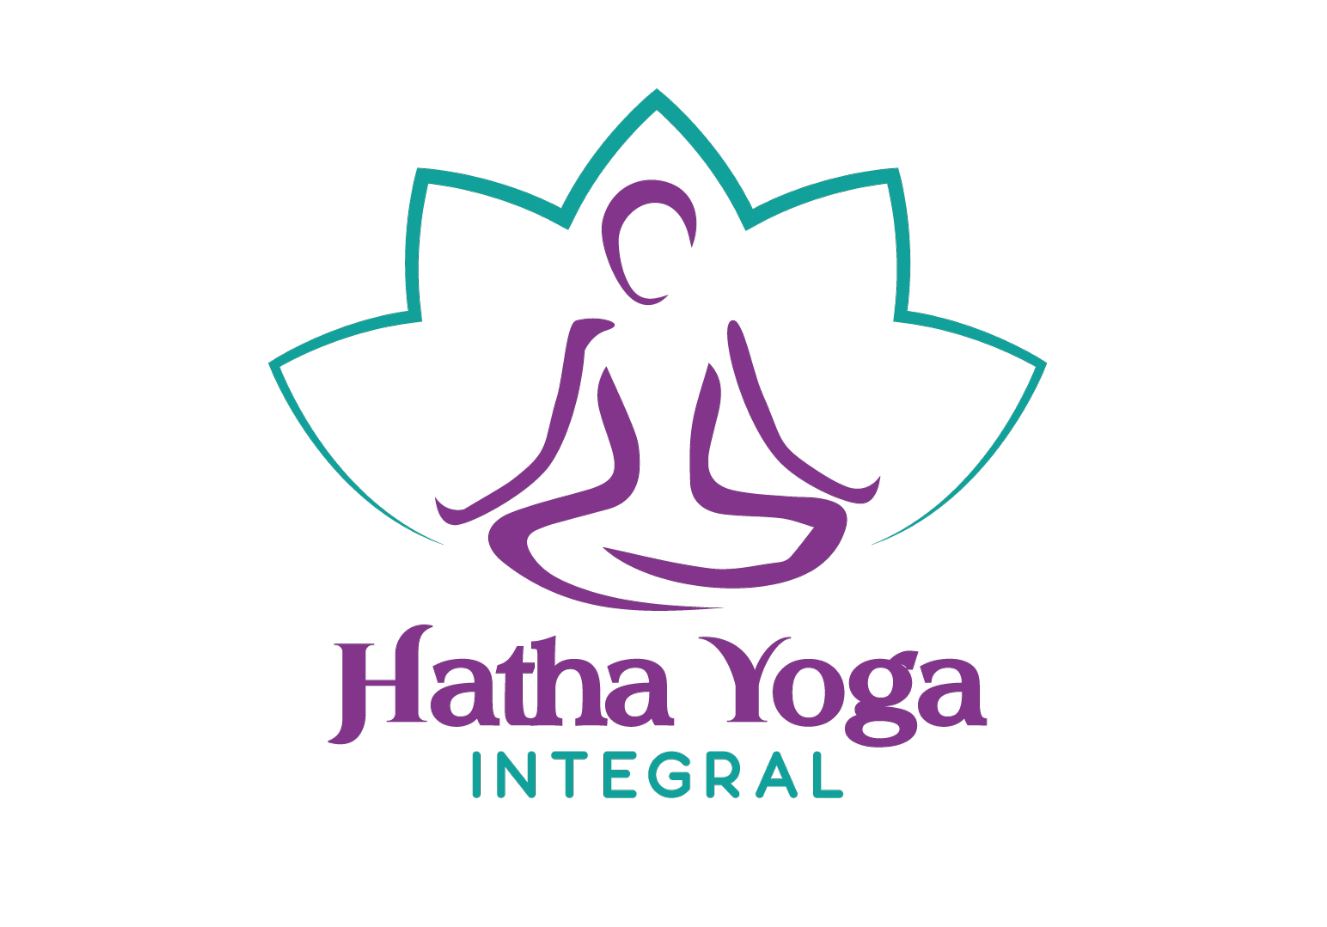 logo de hatha yoga, un dibujo de flor de loto con una persona meditando en su interior